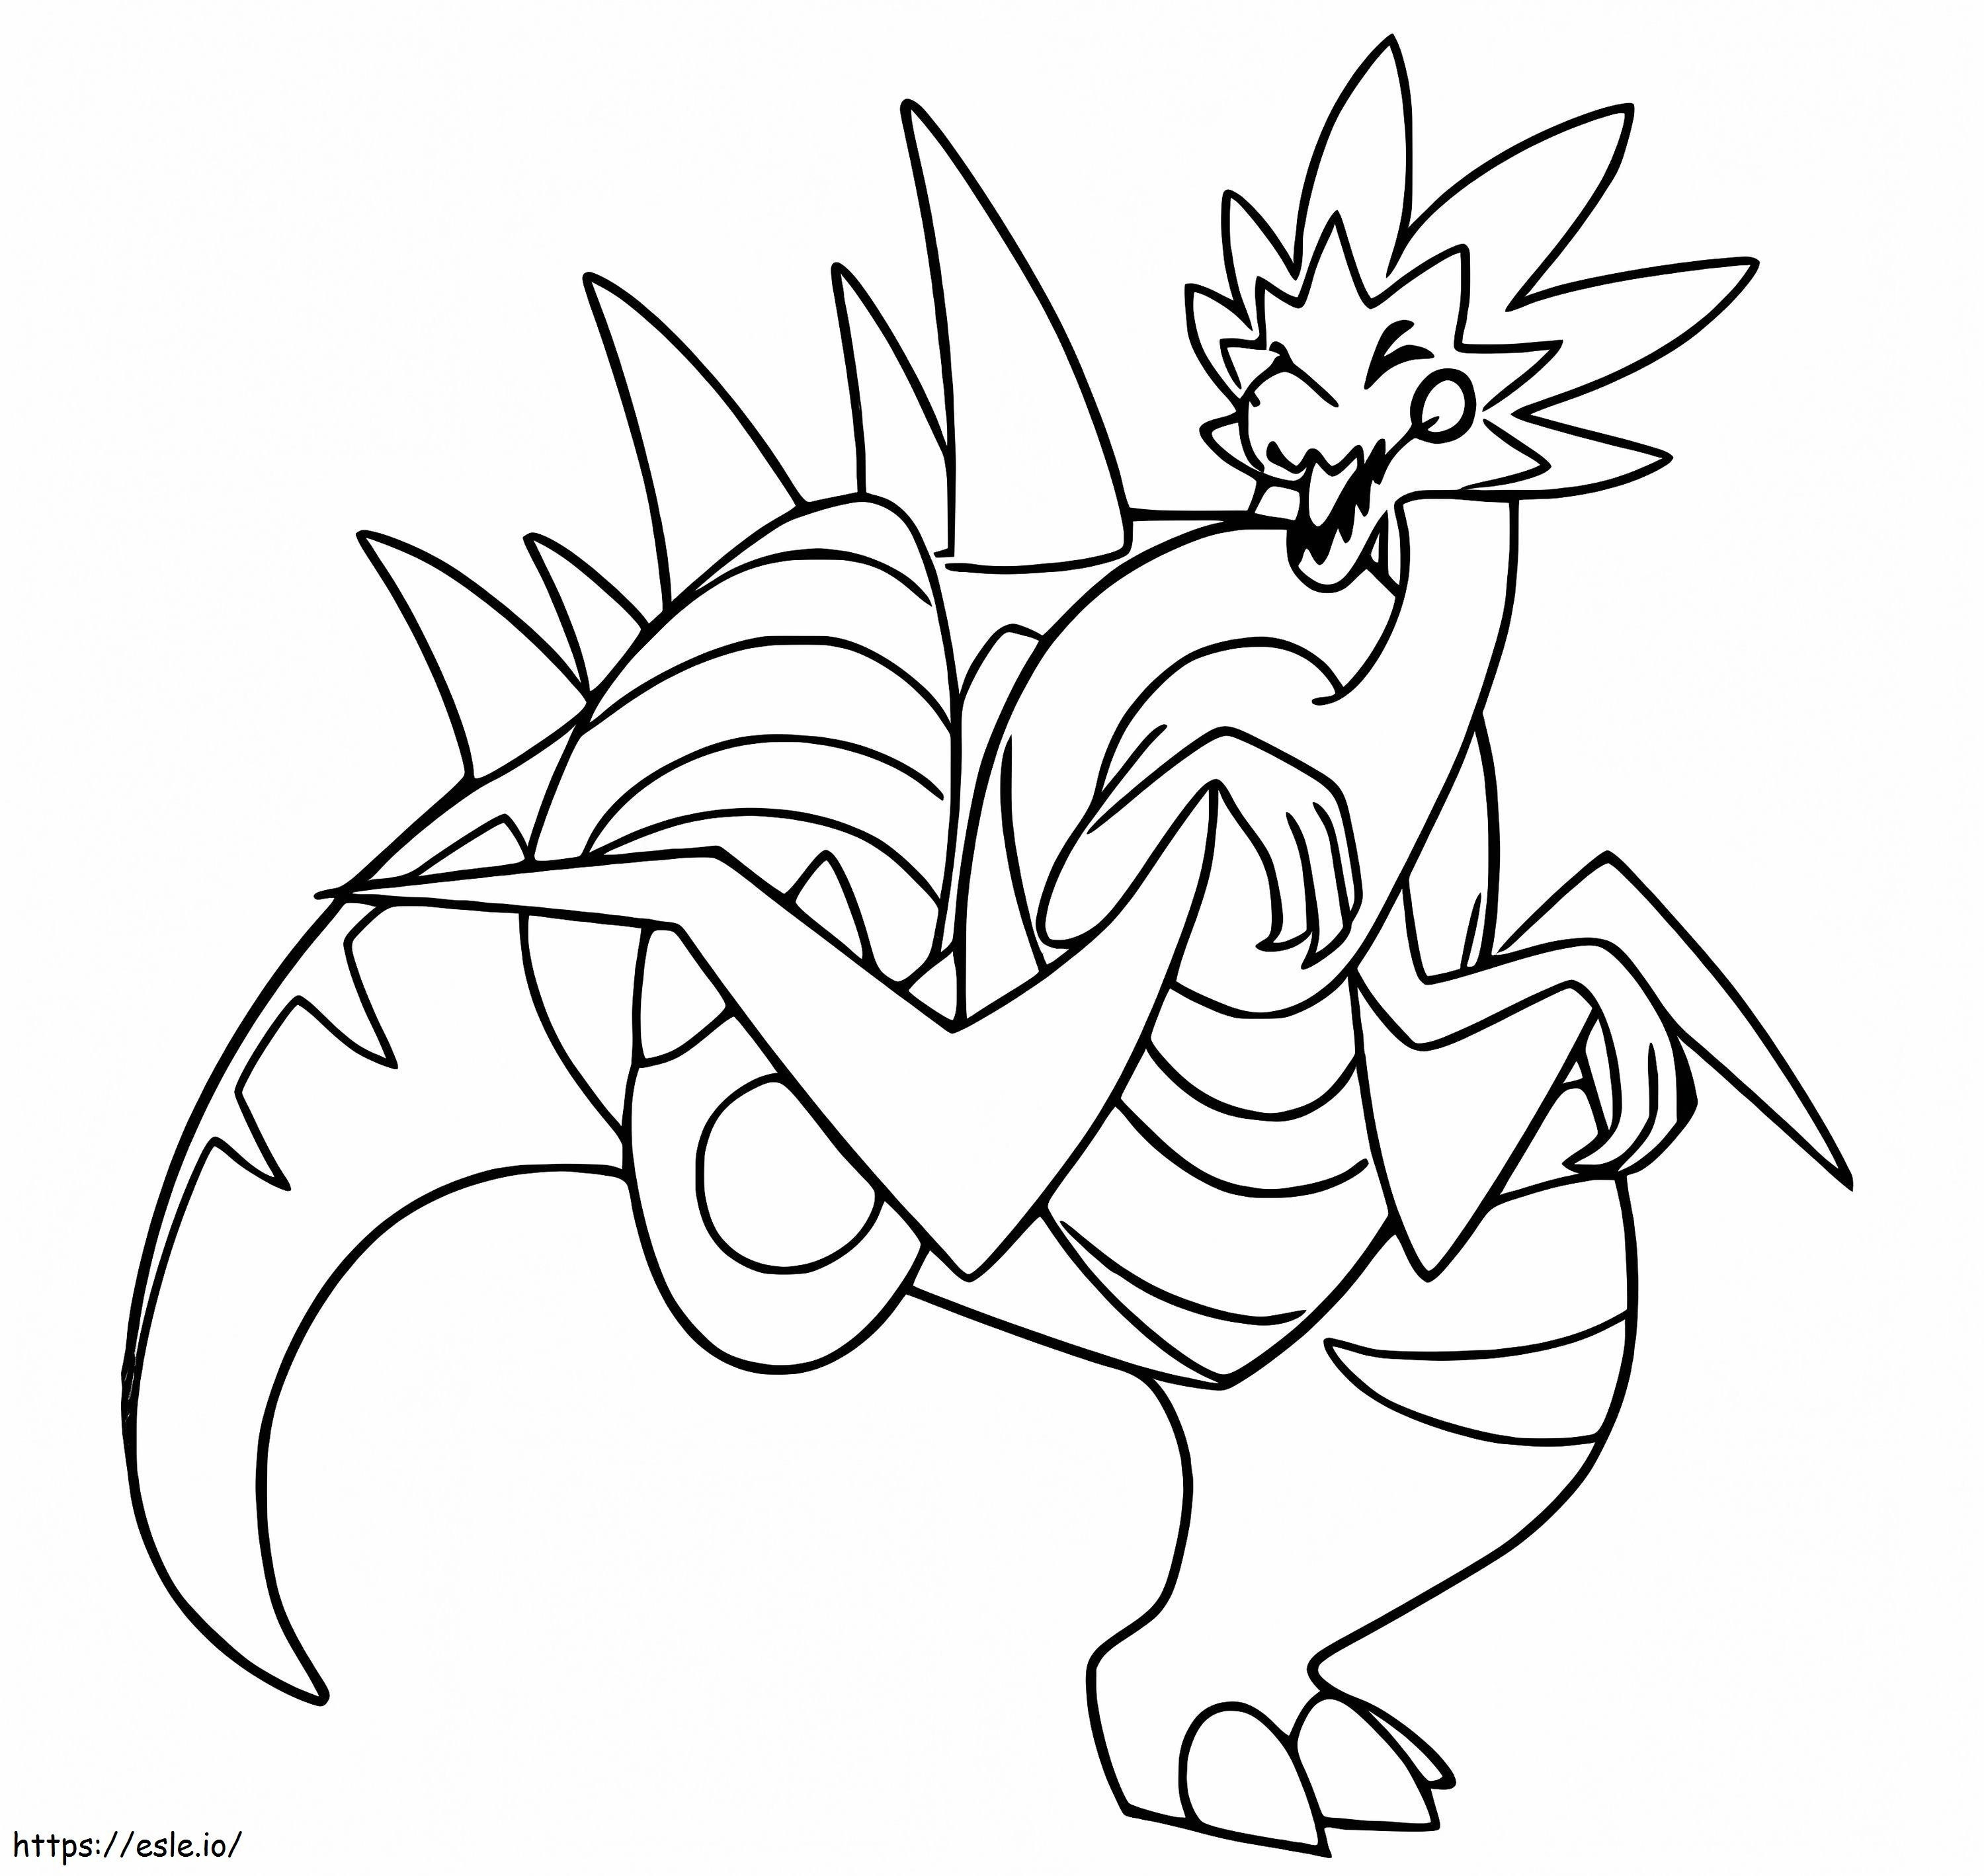 Coloriage Pokémon Dracozolt à imprimer dessin